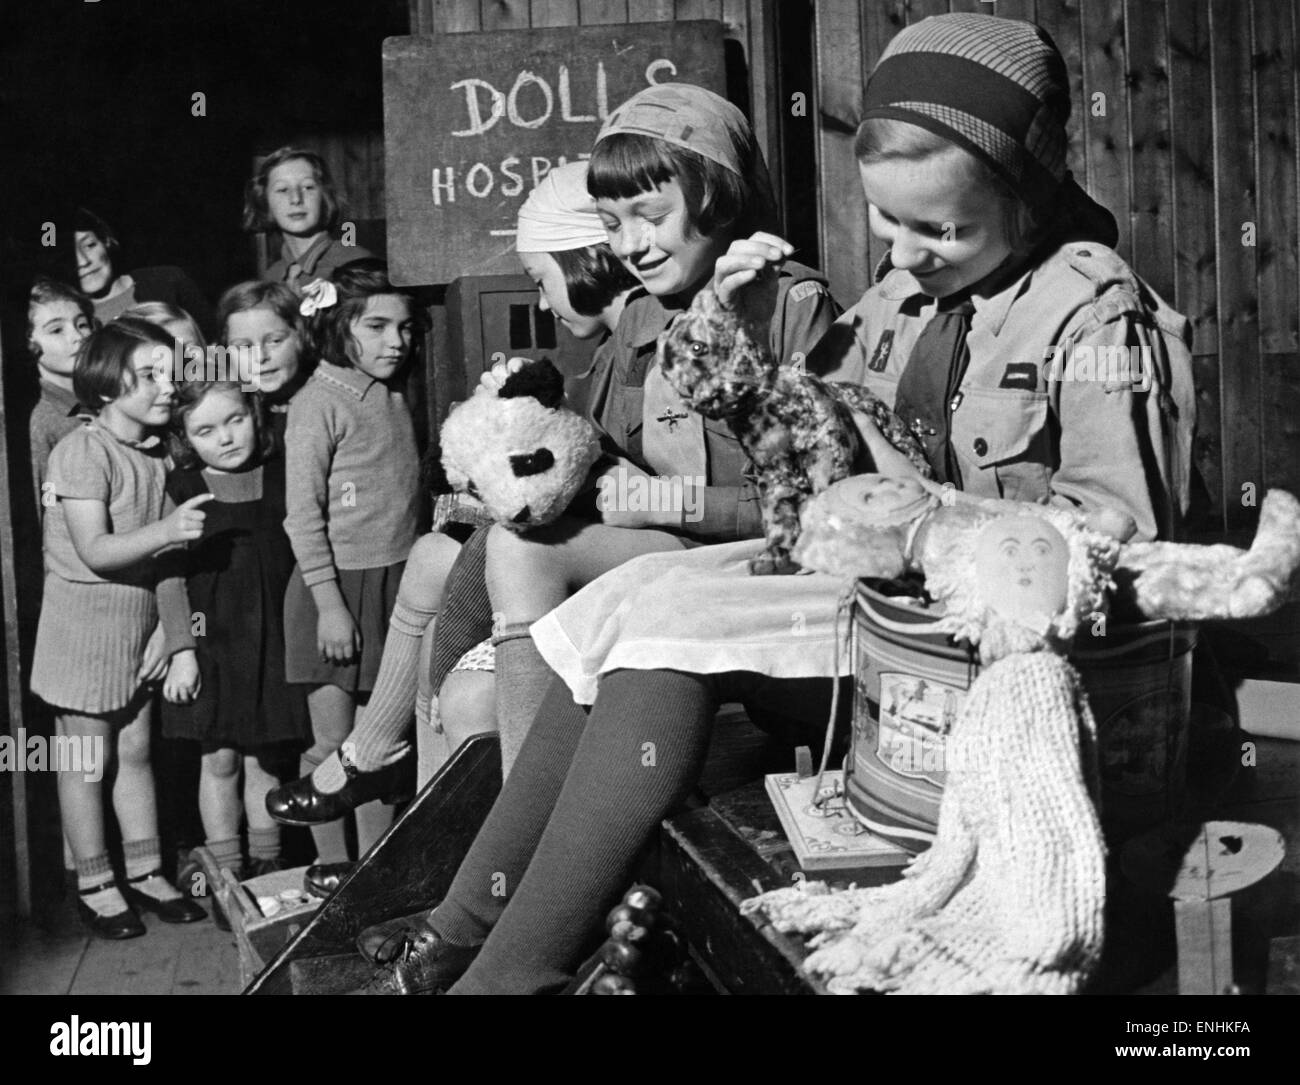 Un jouet pour chaque enfant dans ce village, d'un hôpital de poupées. Stella à l'Ouest, le riz brun, et Gwen Lidbetter- trois filles du village de Storrington, Sussex, travaillent dur pour ce faire. Les greniers et les lofts ont été recherchés pour de vieux jouets cassés et des poupées, et les Banque D'Images